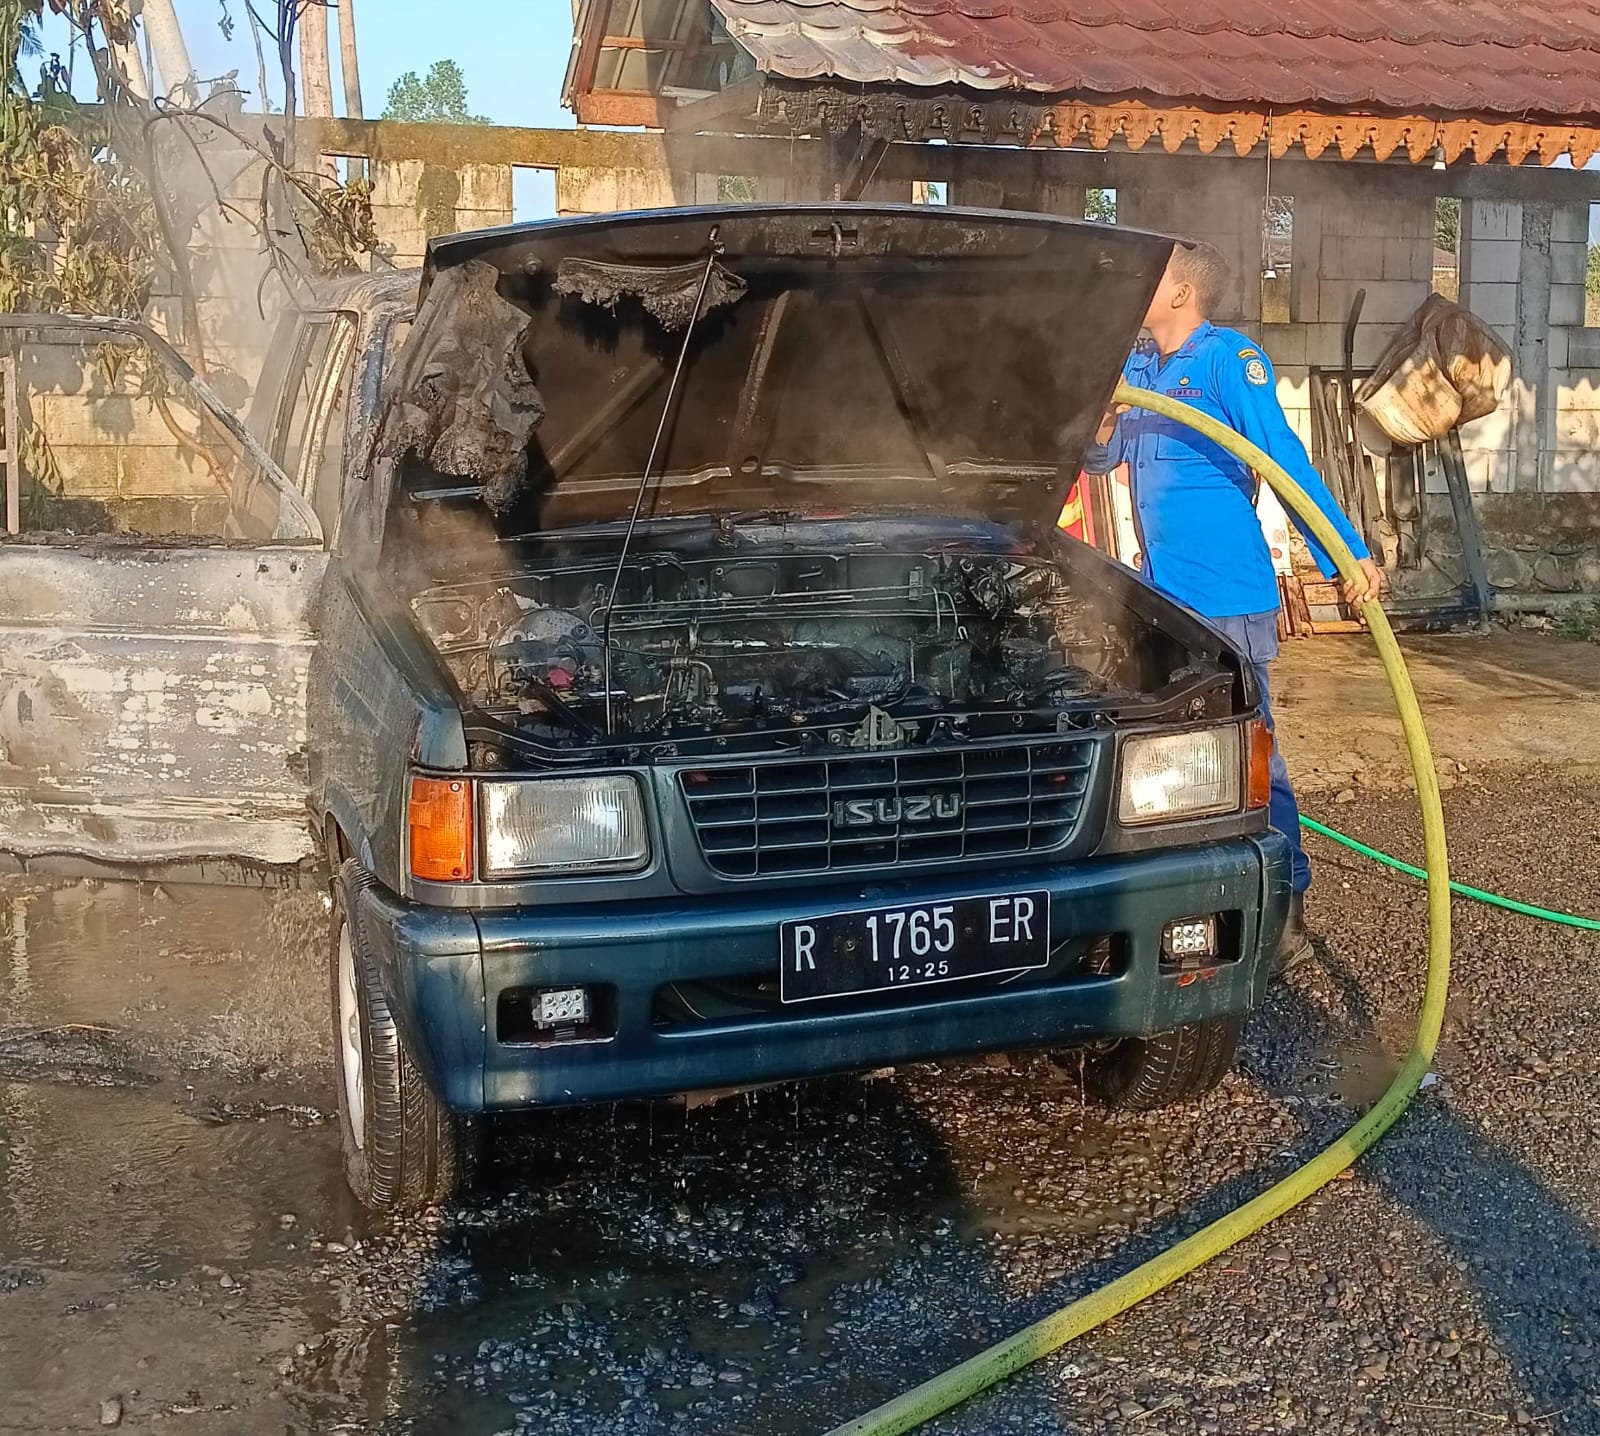 Lagi Dipanaskan Lalu Ditinggal Mandi, Mobil Panther di Baturraden Nyaris Hangus Terbakar